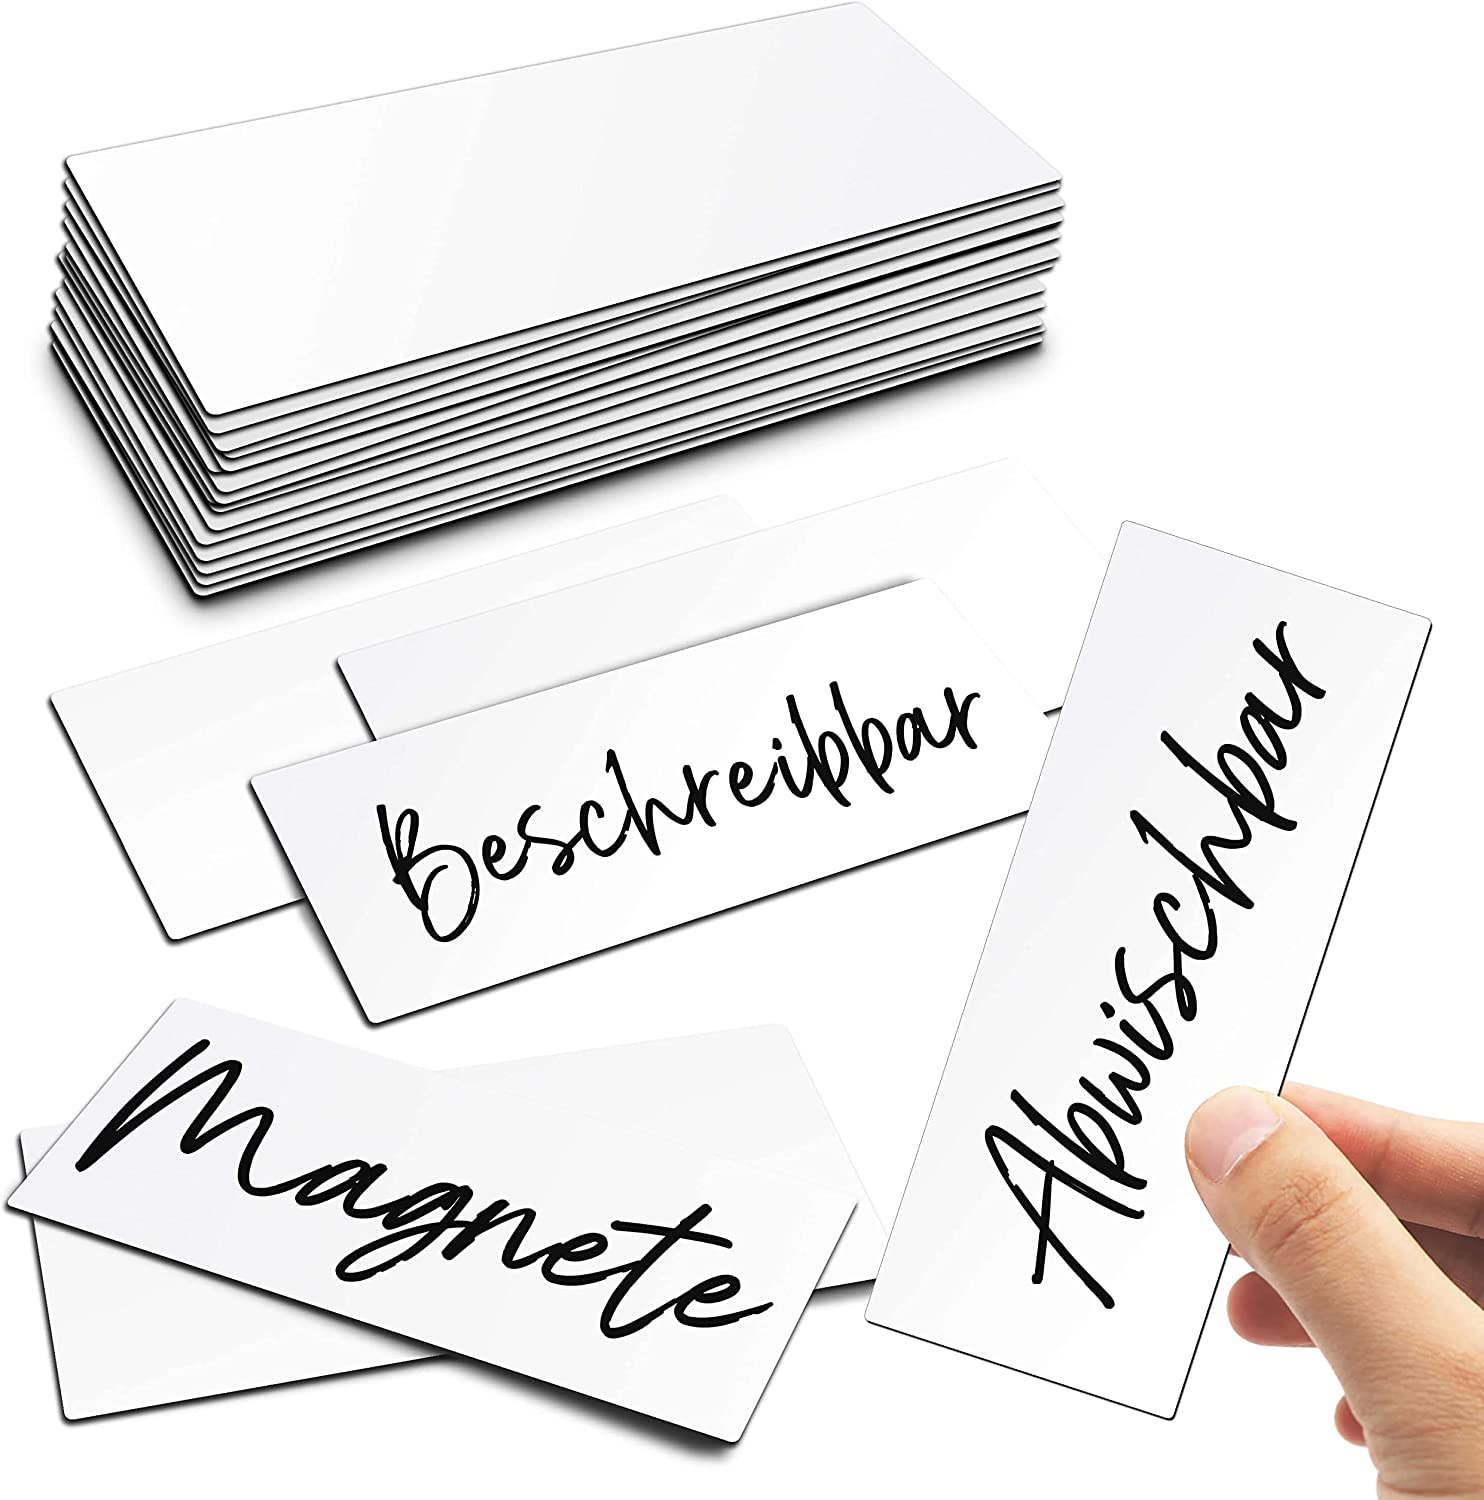 Magnetetiketten Magnetschilder beschreibbar weiß, abwischbare Magnete, Magnetschilder zum beschriften, Magnet-Etiketten für Whiteboards, Kühlschränke, Magnettafeln, Lagerbeschriftung, Kennzeichnung